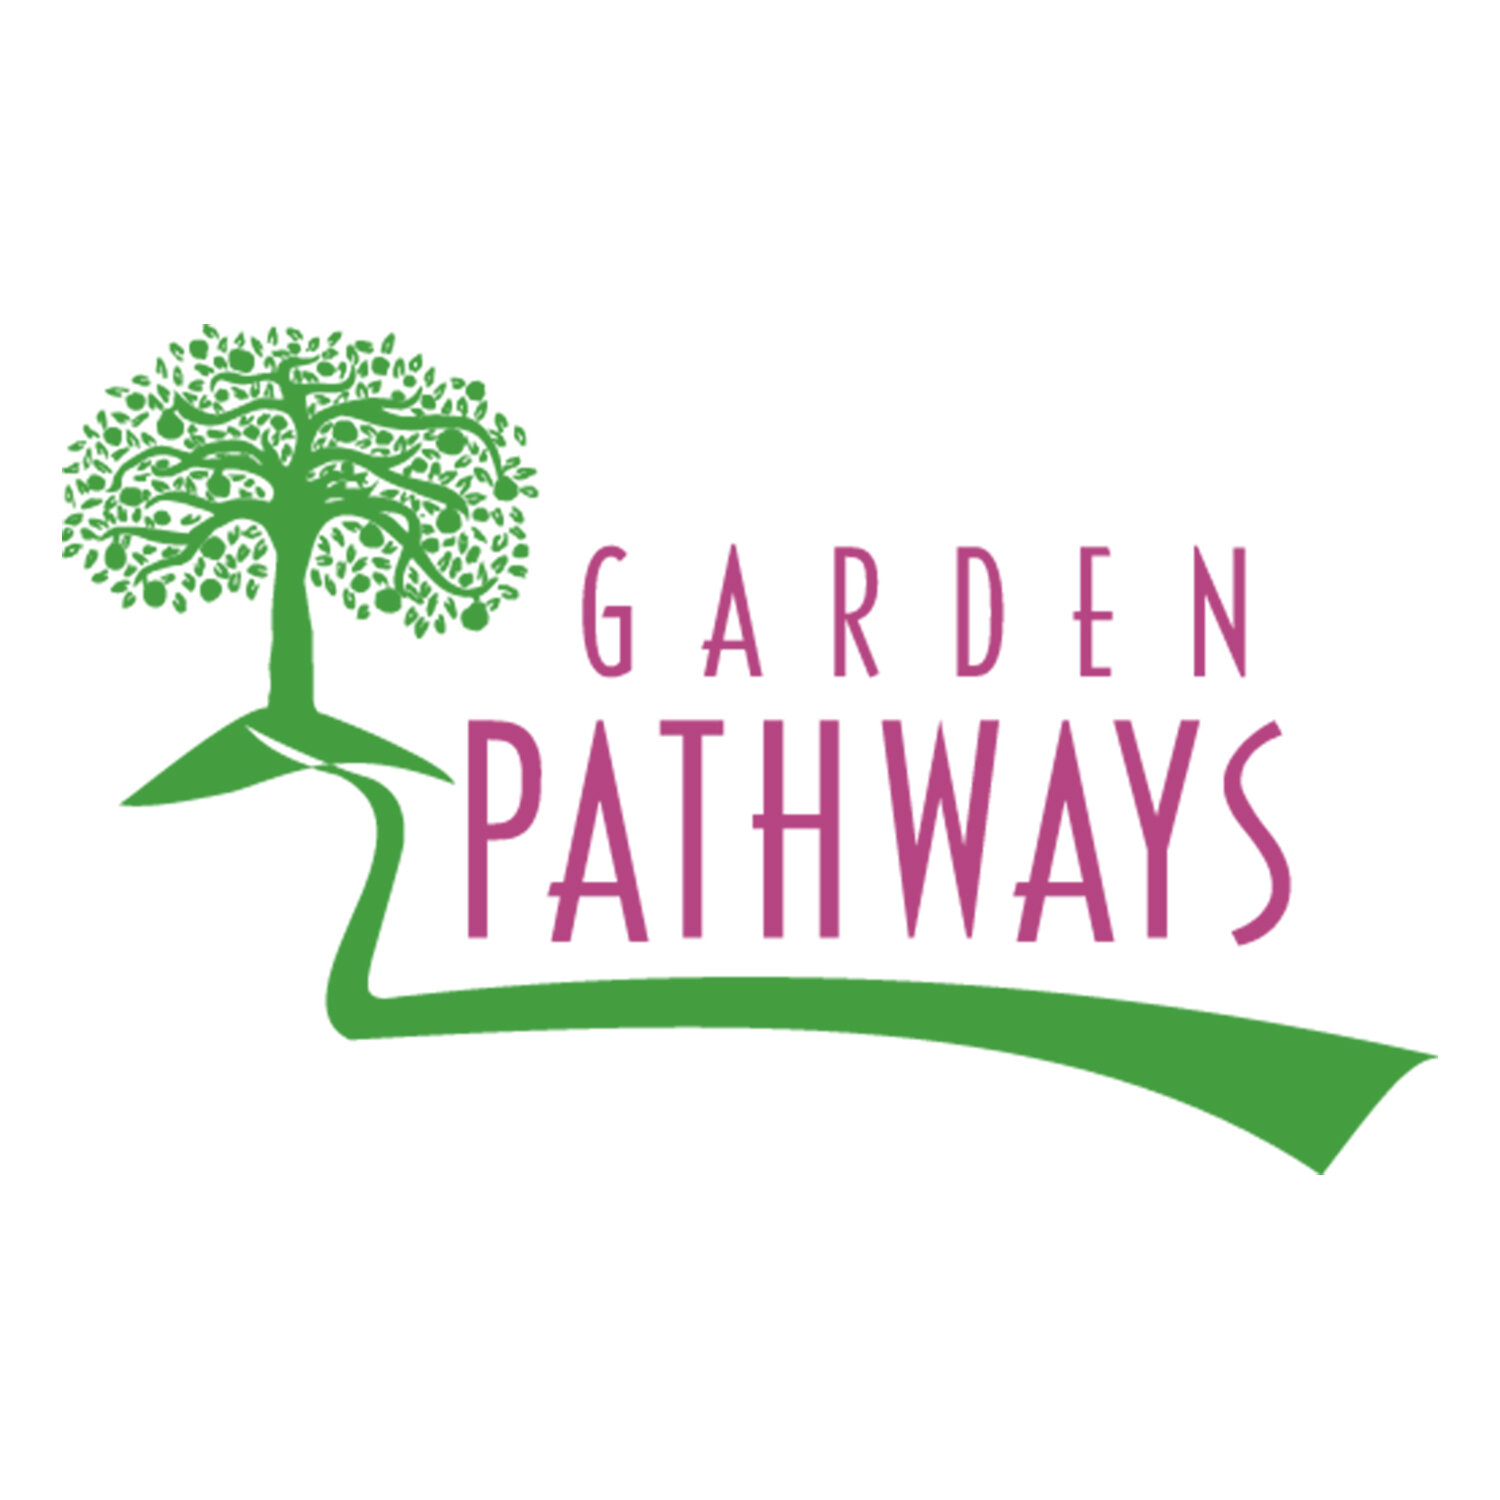 GardenPathways.jpg